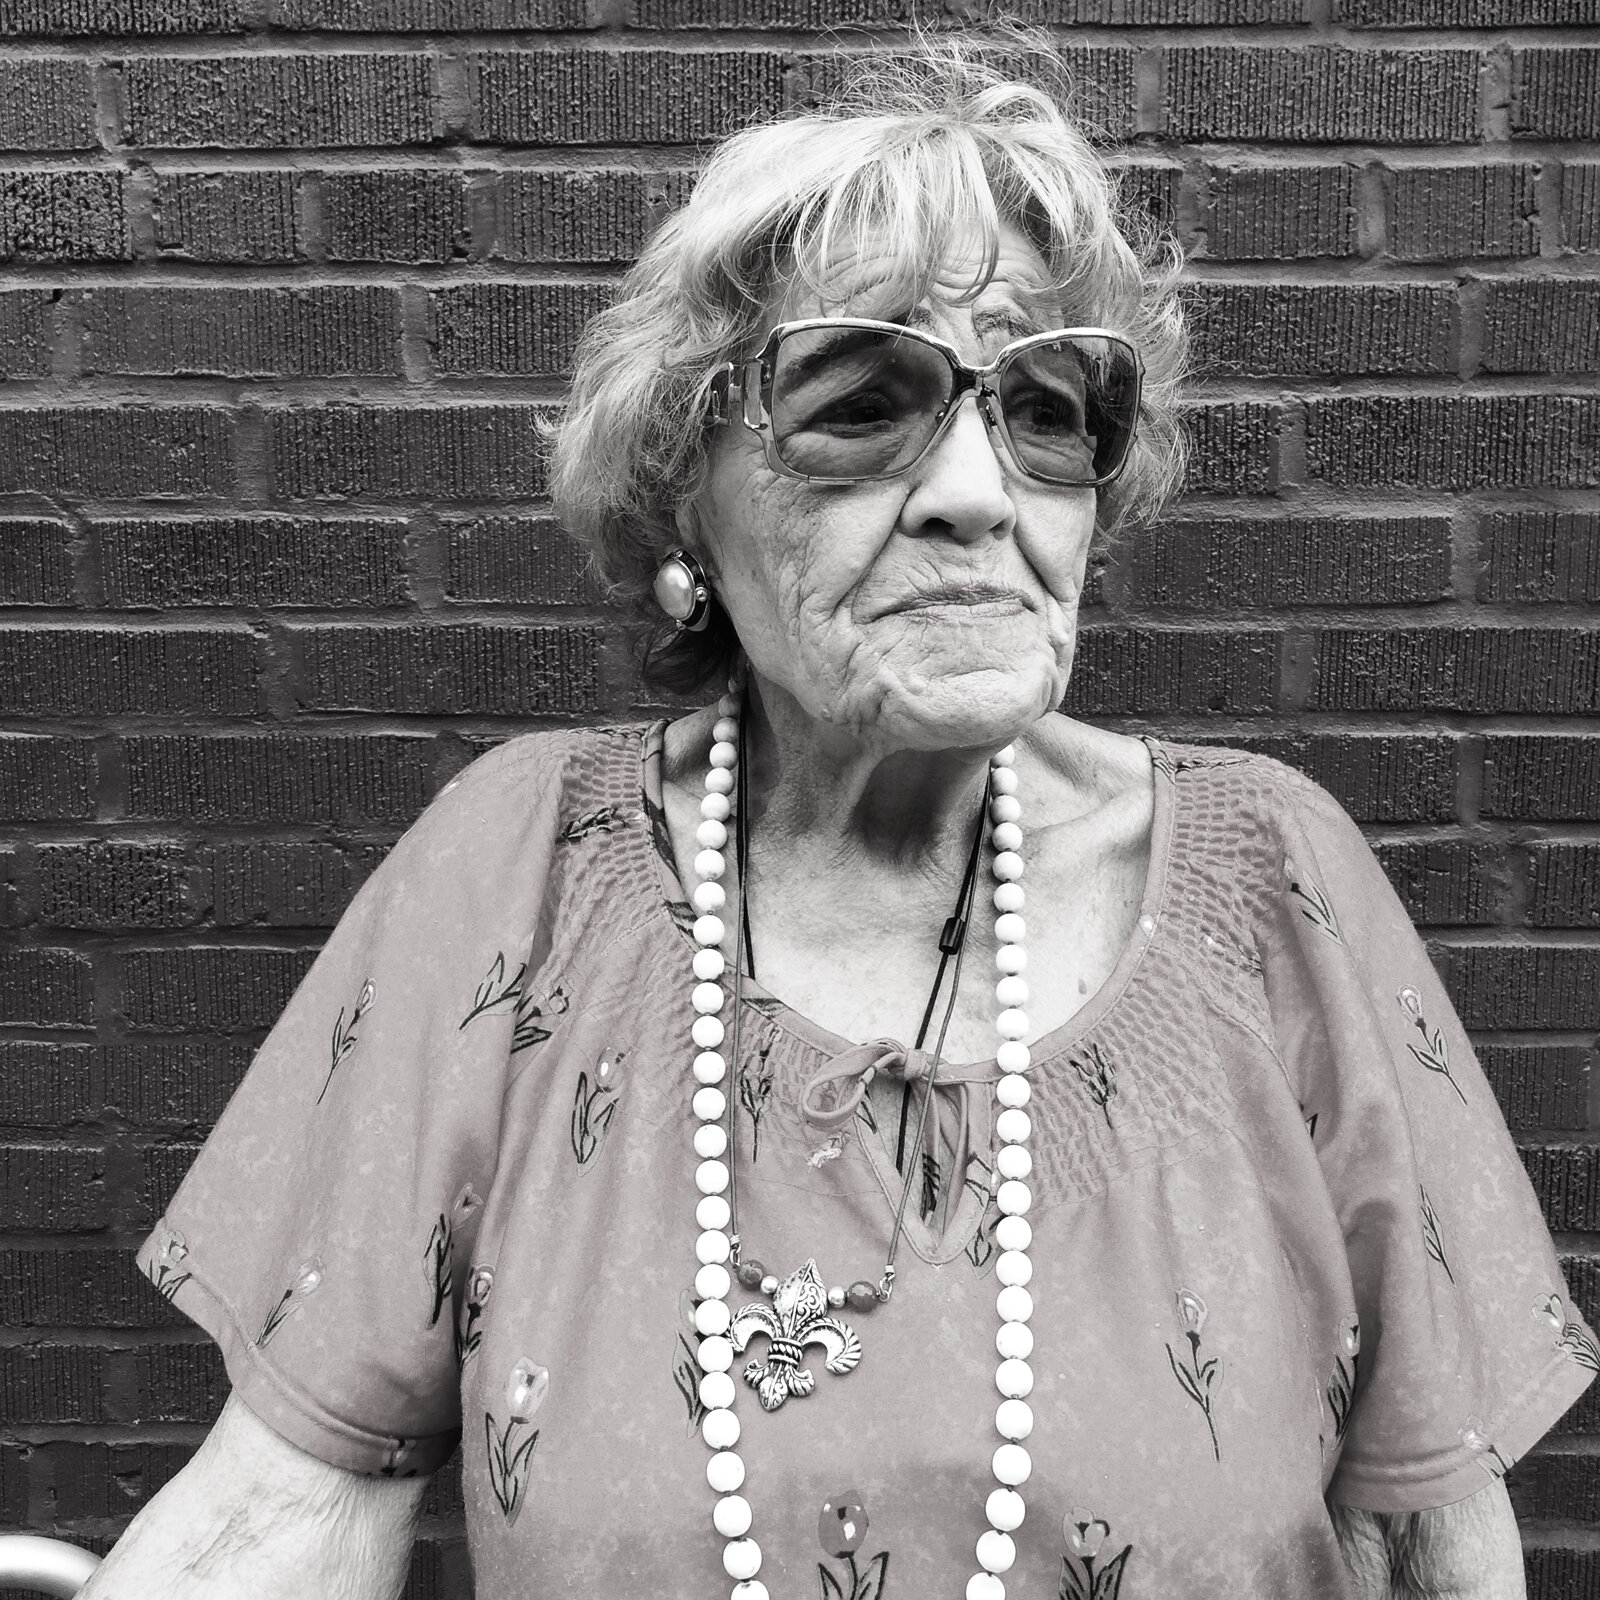 Leonora. Williamsburg, Brooklyn. July 4th, 2015.